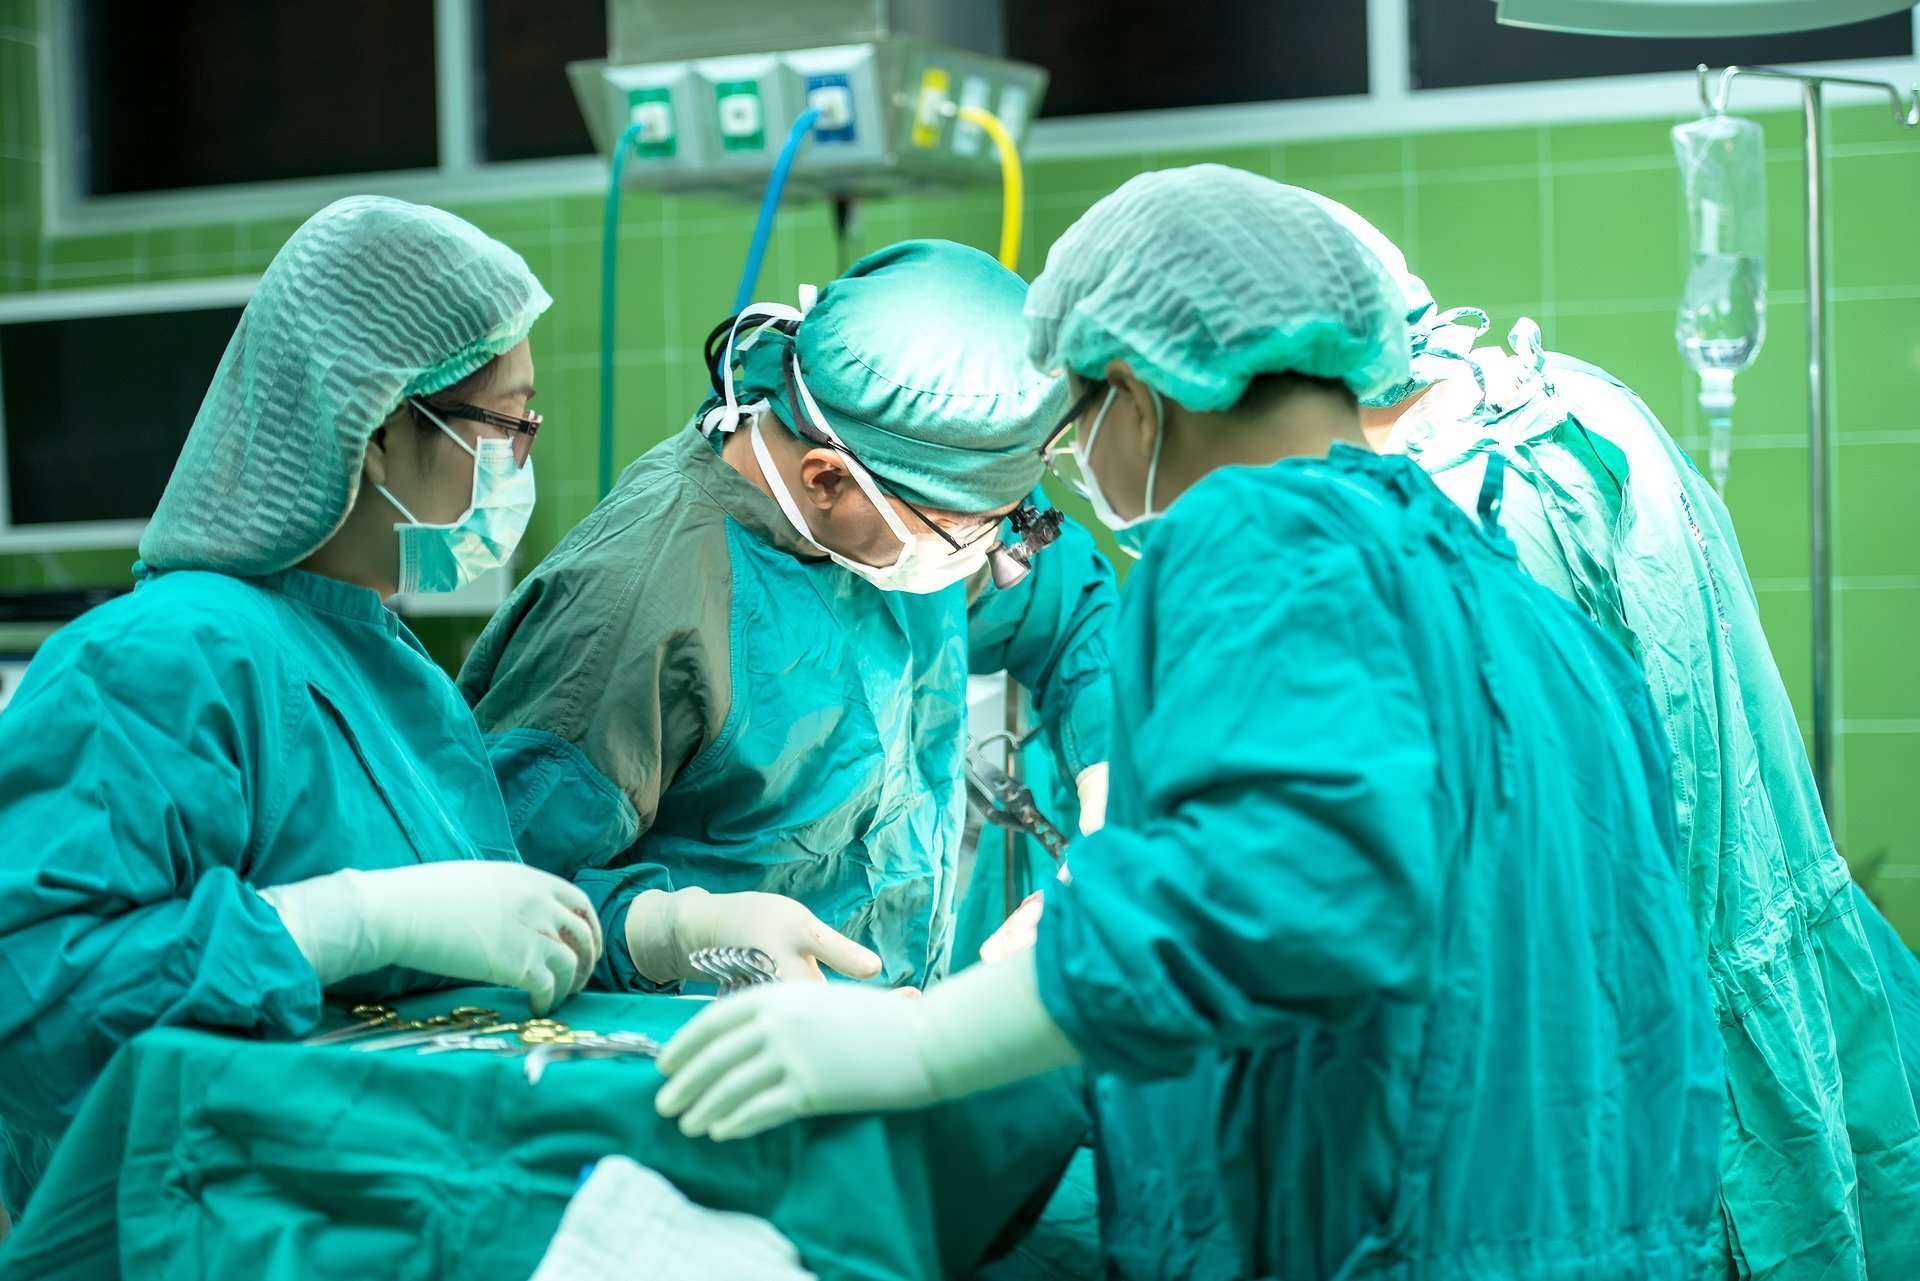 Unui pacient american i s-a refuzat transplantul de inimă pentru că nu se vaccinează antiCovid